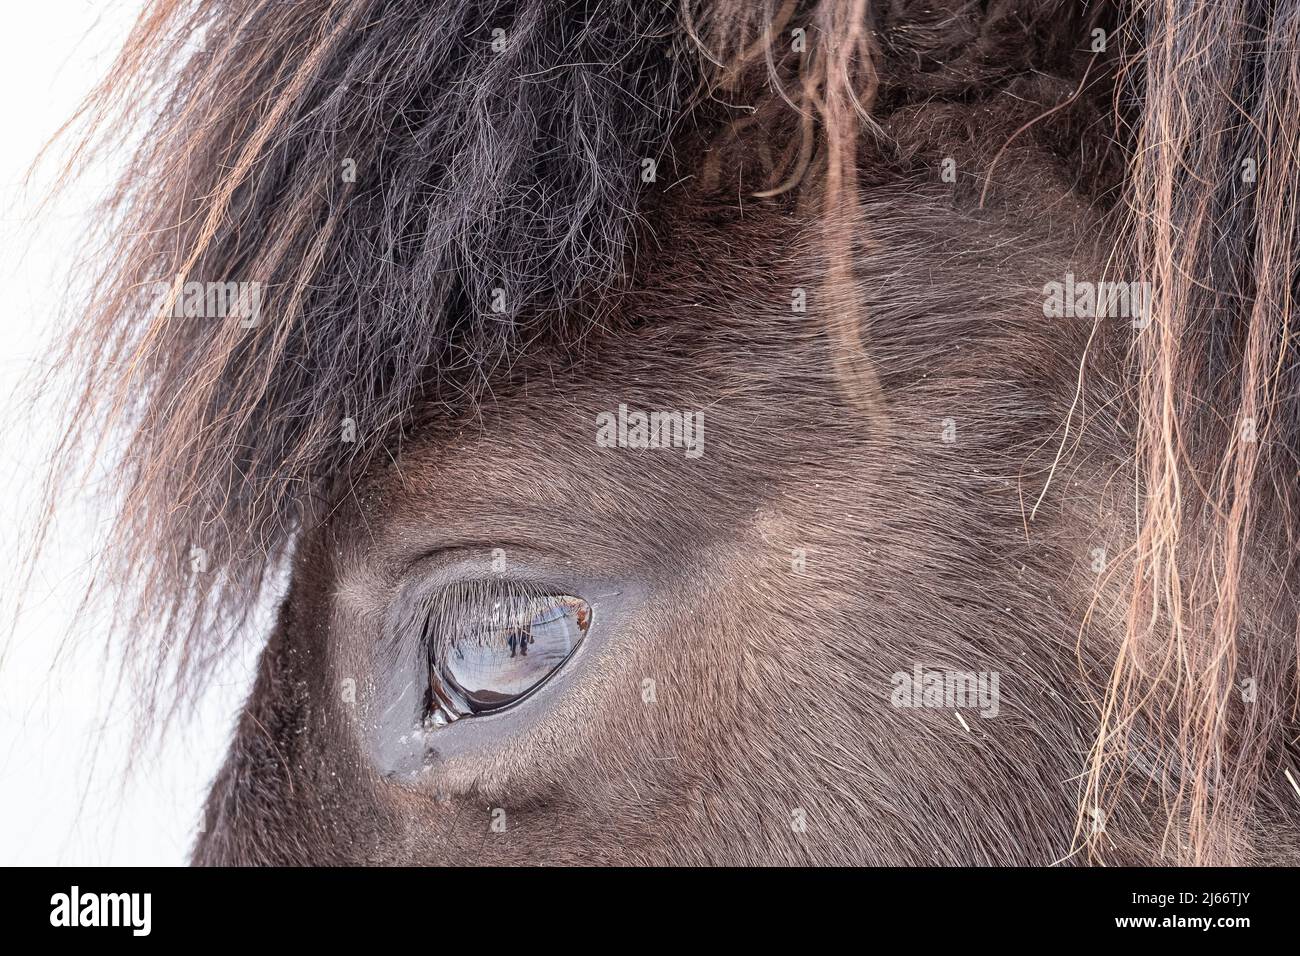 Islandpferd, Nahaufnahme Auge - cavallo di gelandci, primo piano dell'occhio Foto Stock